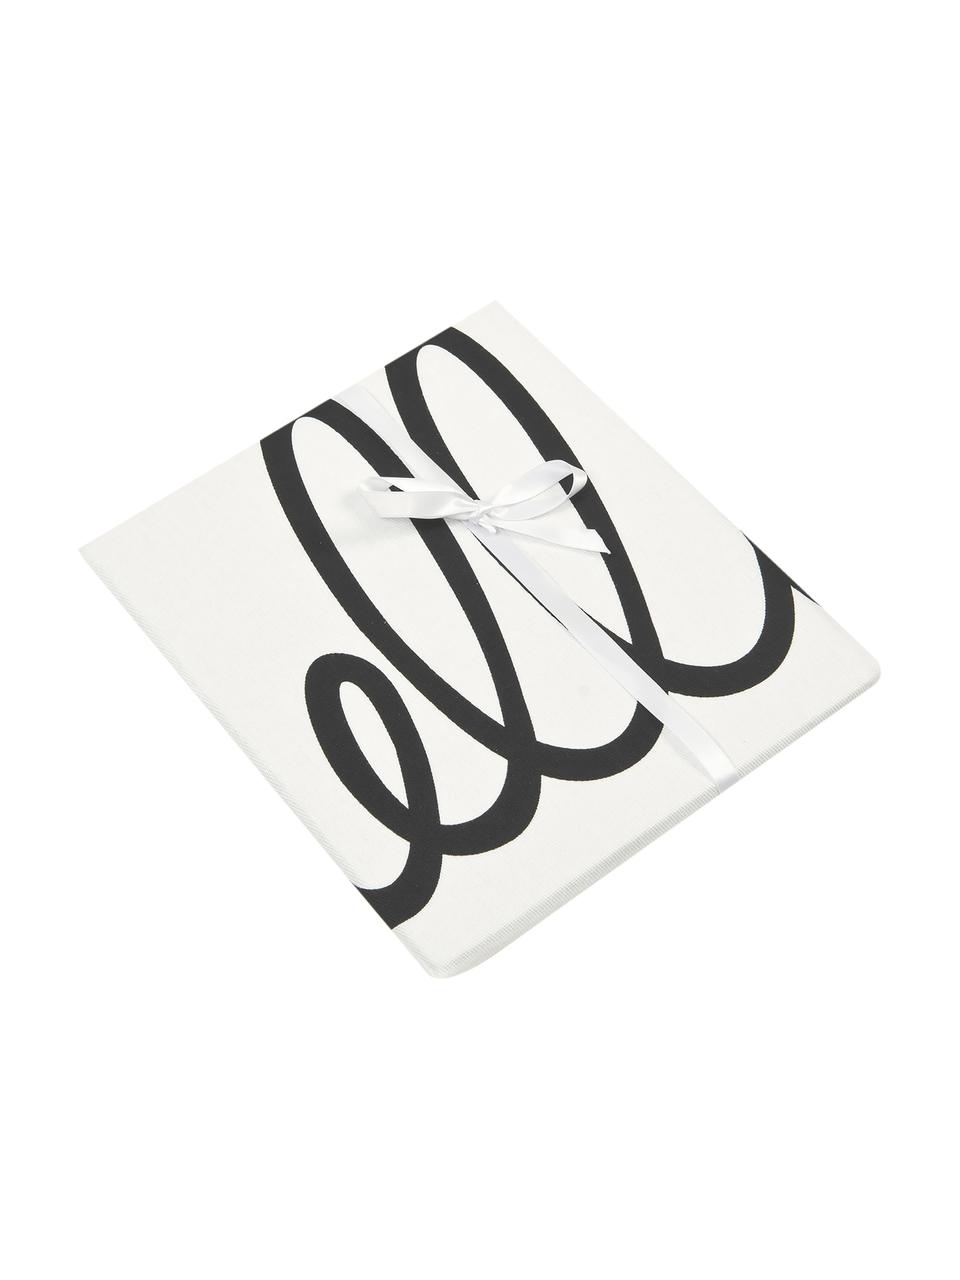 Kissenhülle Hello mit Schriftzug in Schwarz/Weiß, 100% Baumwolle, Panamabindung, Schwarz, Cremeweiß, 40 x 40 cm